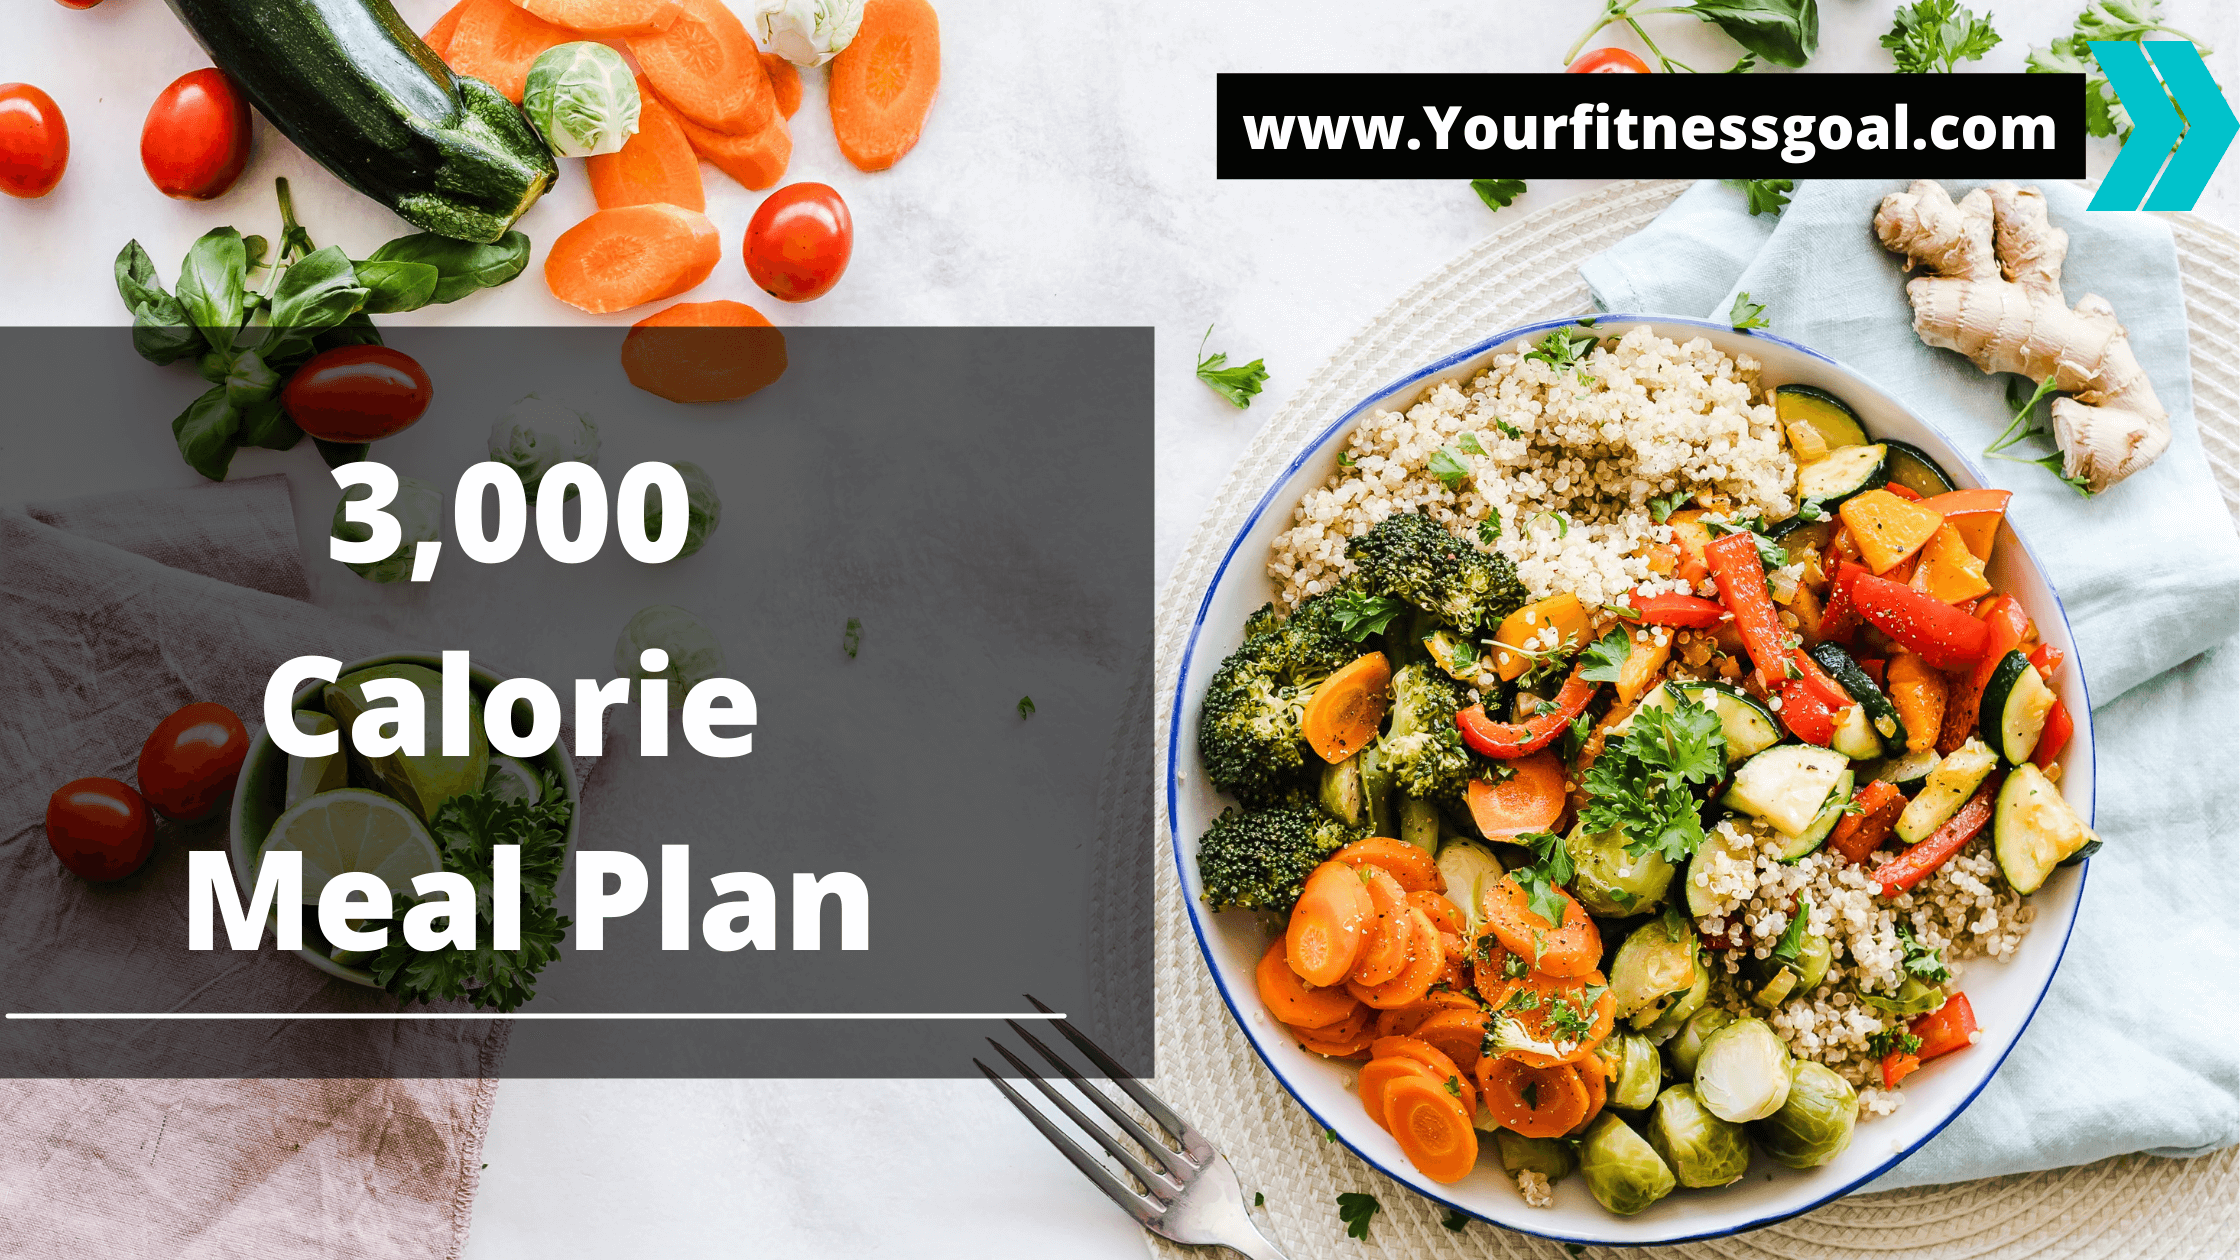 3000 calorie meal plan